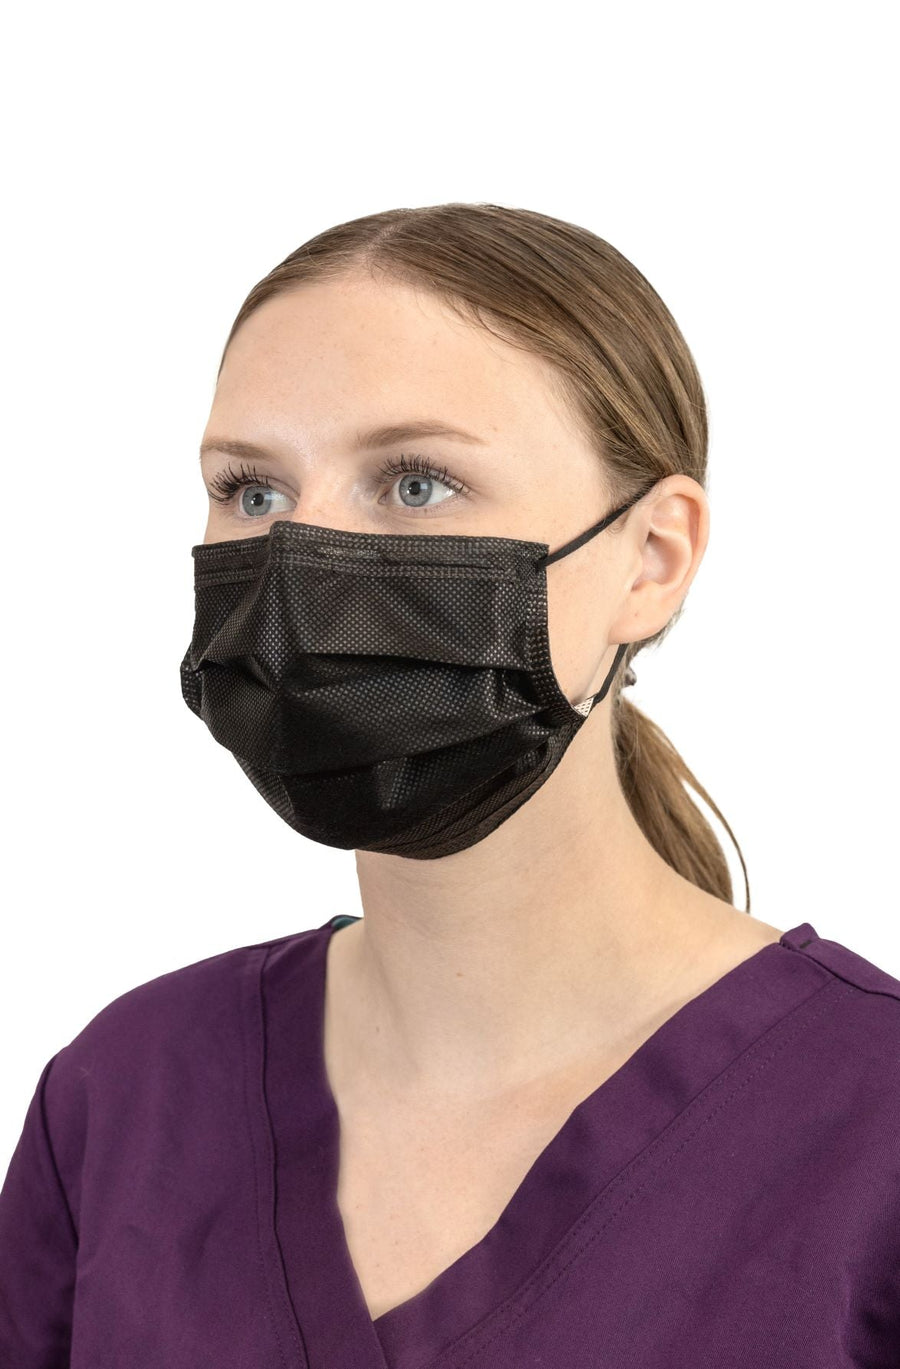 Masque noir médical (ASTM niveau 3)